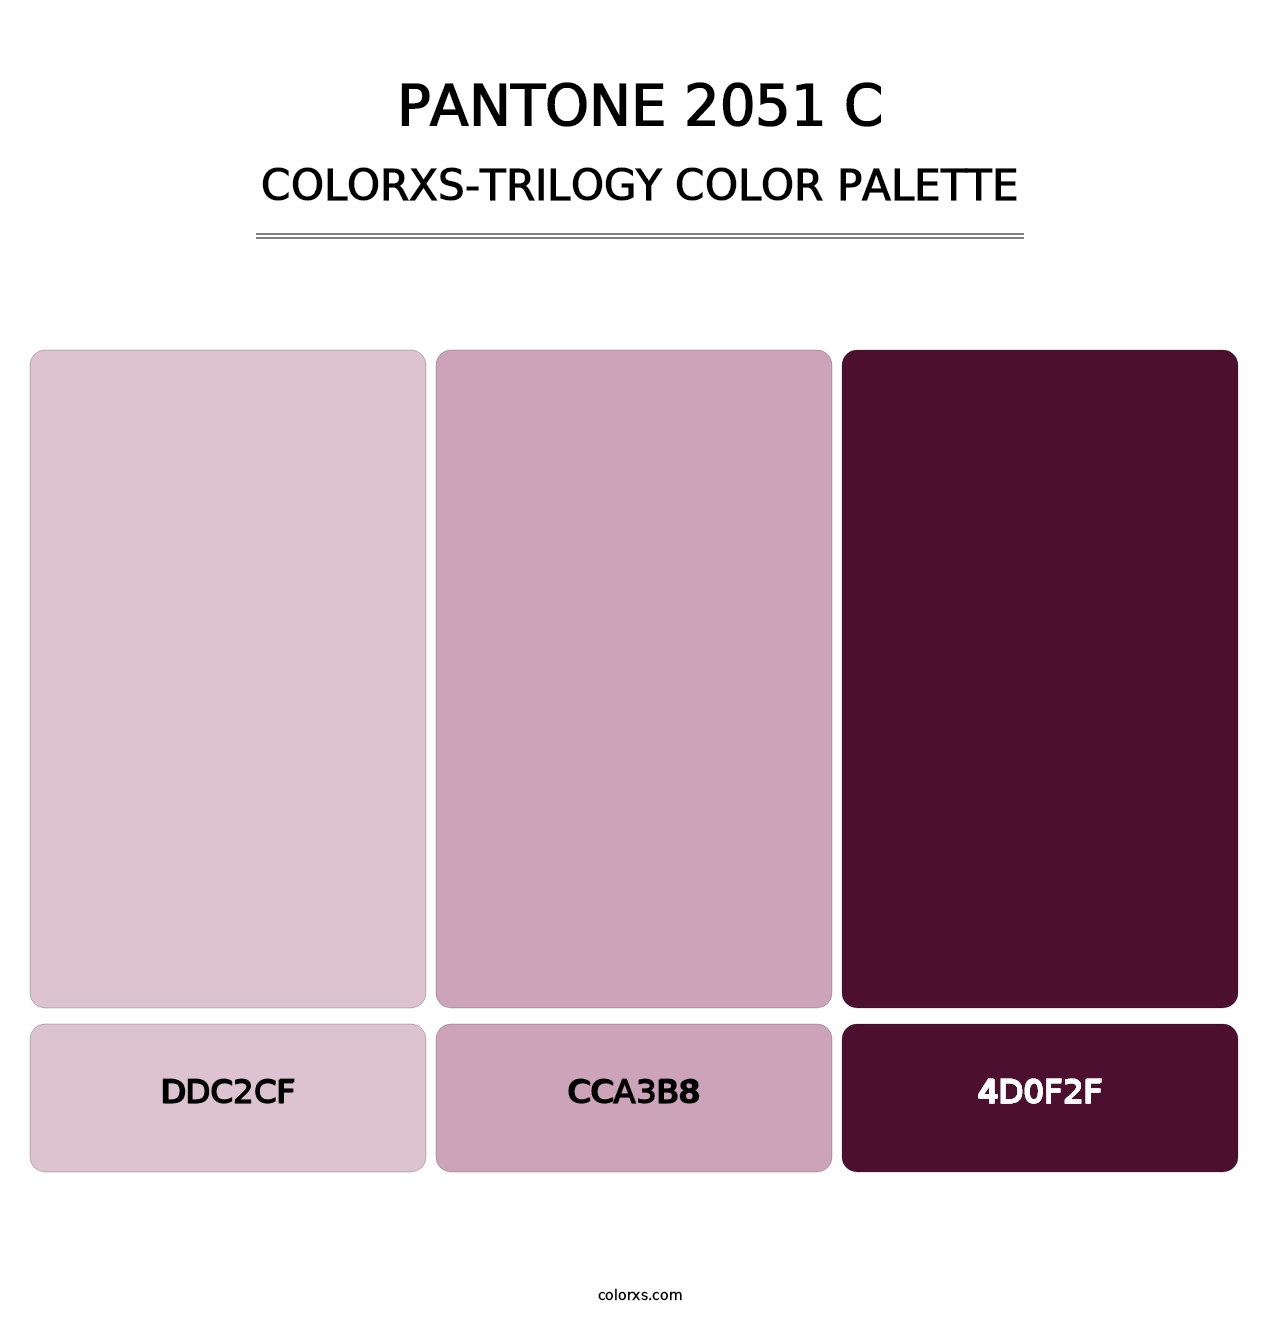 PANTONE 2051 C - Colorxs Trilogy Palette